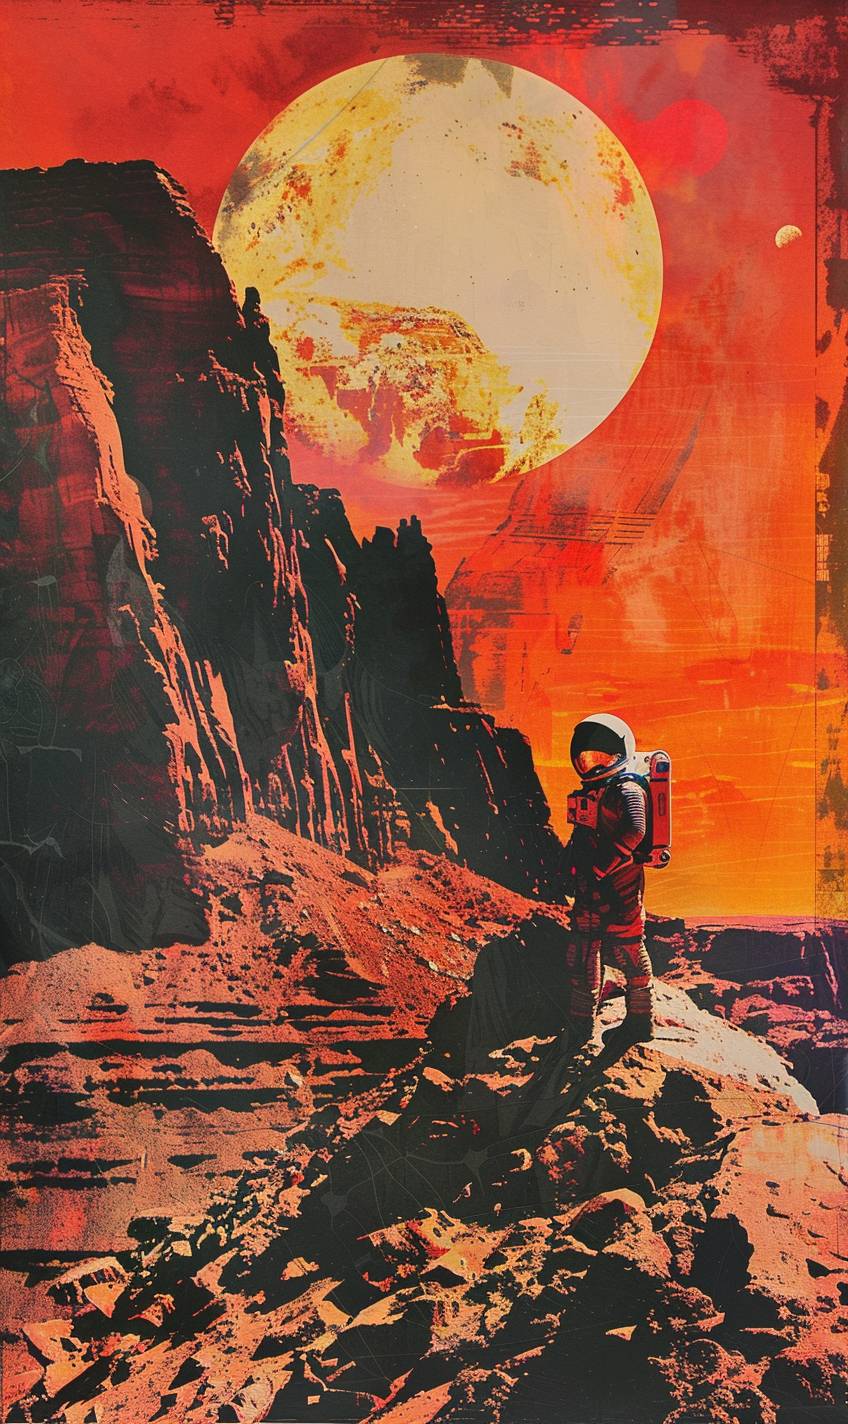 火星の宇宙飛行士、赤いエイリアンの風景、巨大な夕日、巨大な惑星の空、急な岩の形態、反射するバイザー、宇宙探査、高コントラスト、デジタルアート、鮮やかな色彩、長い影、孤独、静か、超写実的な水彩画、グラフィックノベルスタイル